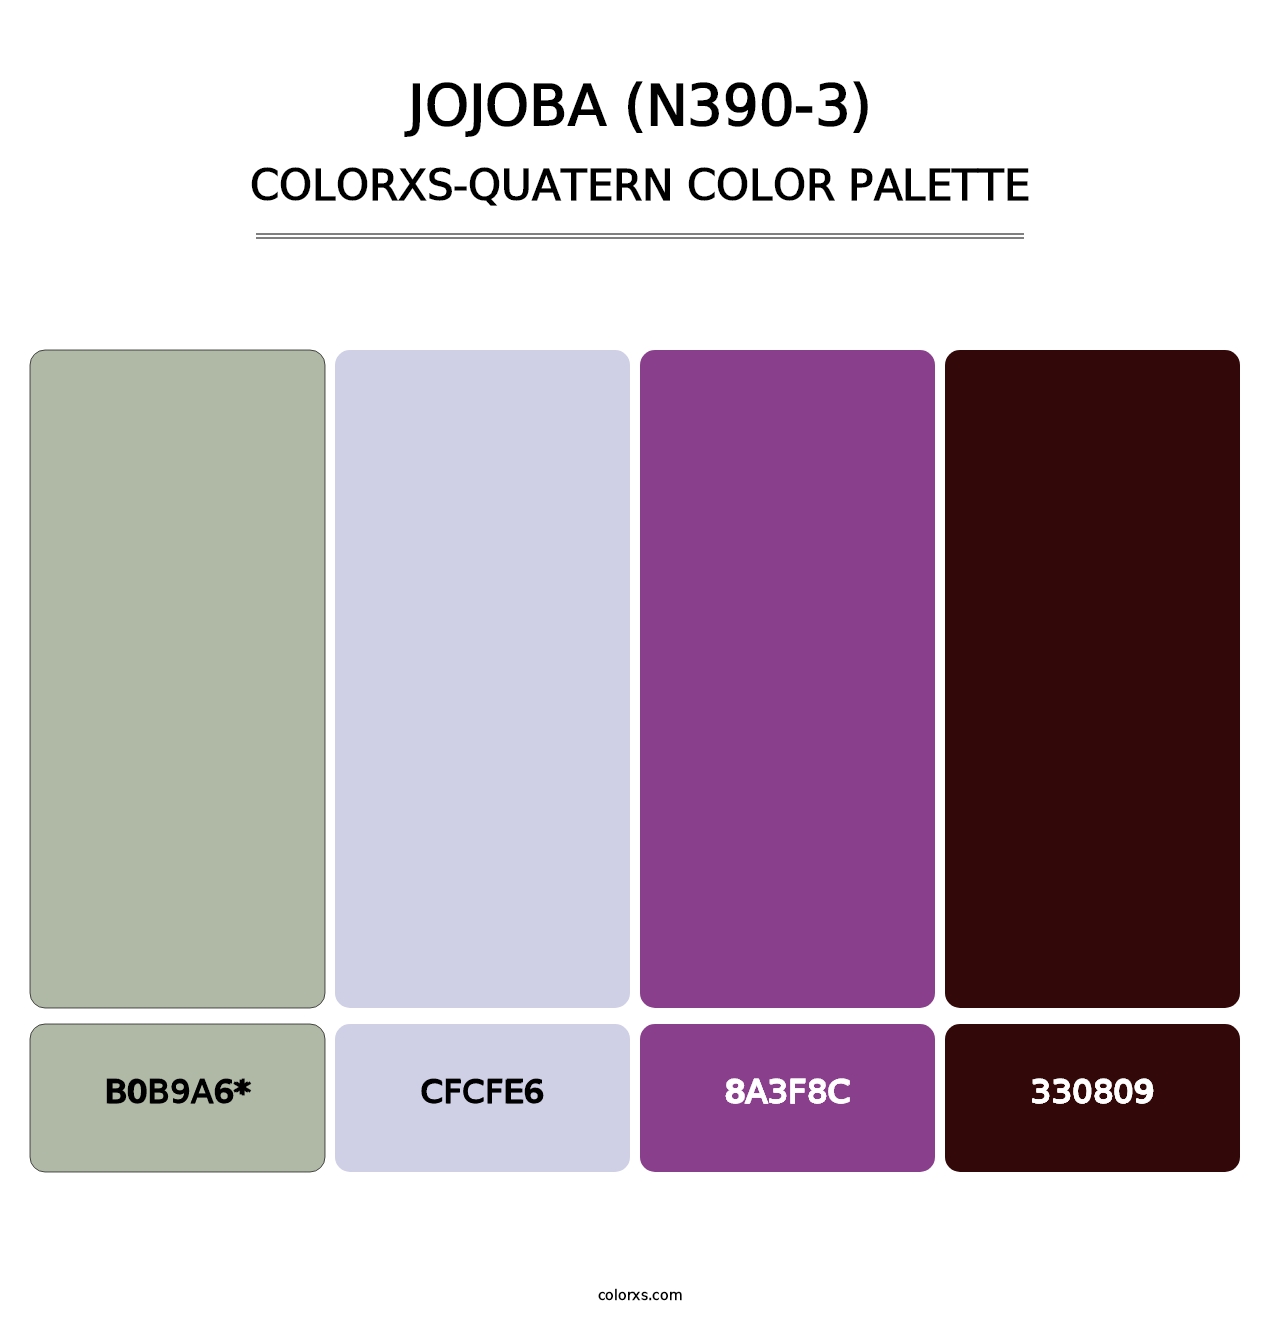 Jojoba (N390-3) - Colorxs Quatern Palette